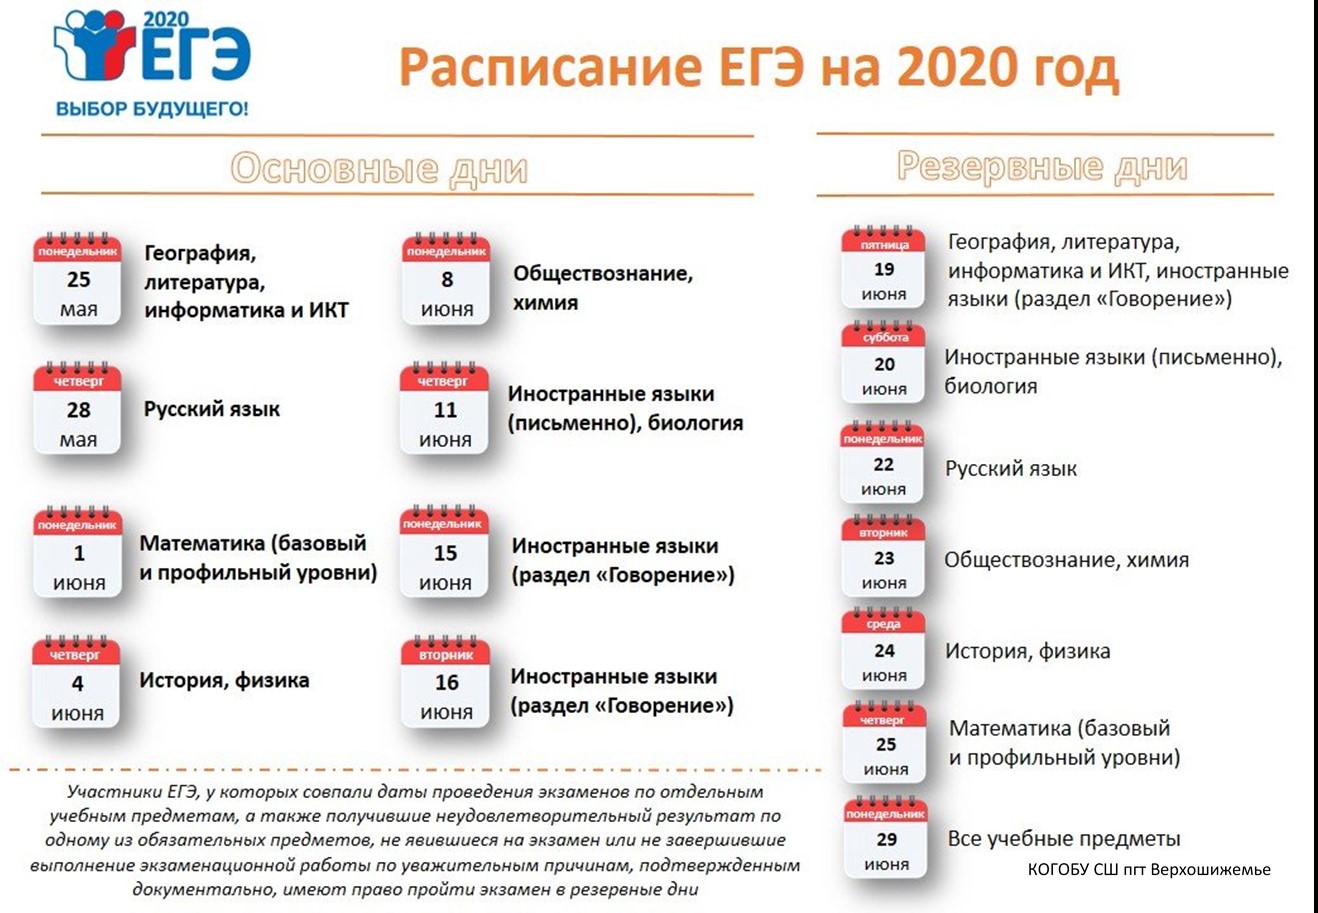 Даты егэ 2024 расписание новое. ЕГЭ 2020 даты проведения. Сроки проведения единого государственного экзамена в 2020 году. ЕГЭ 2020 расписание экзаменов. Резервные даты ЕГЭ 2020.